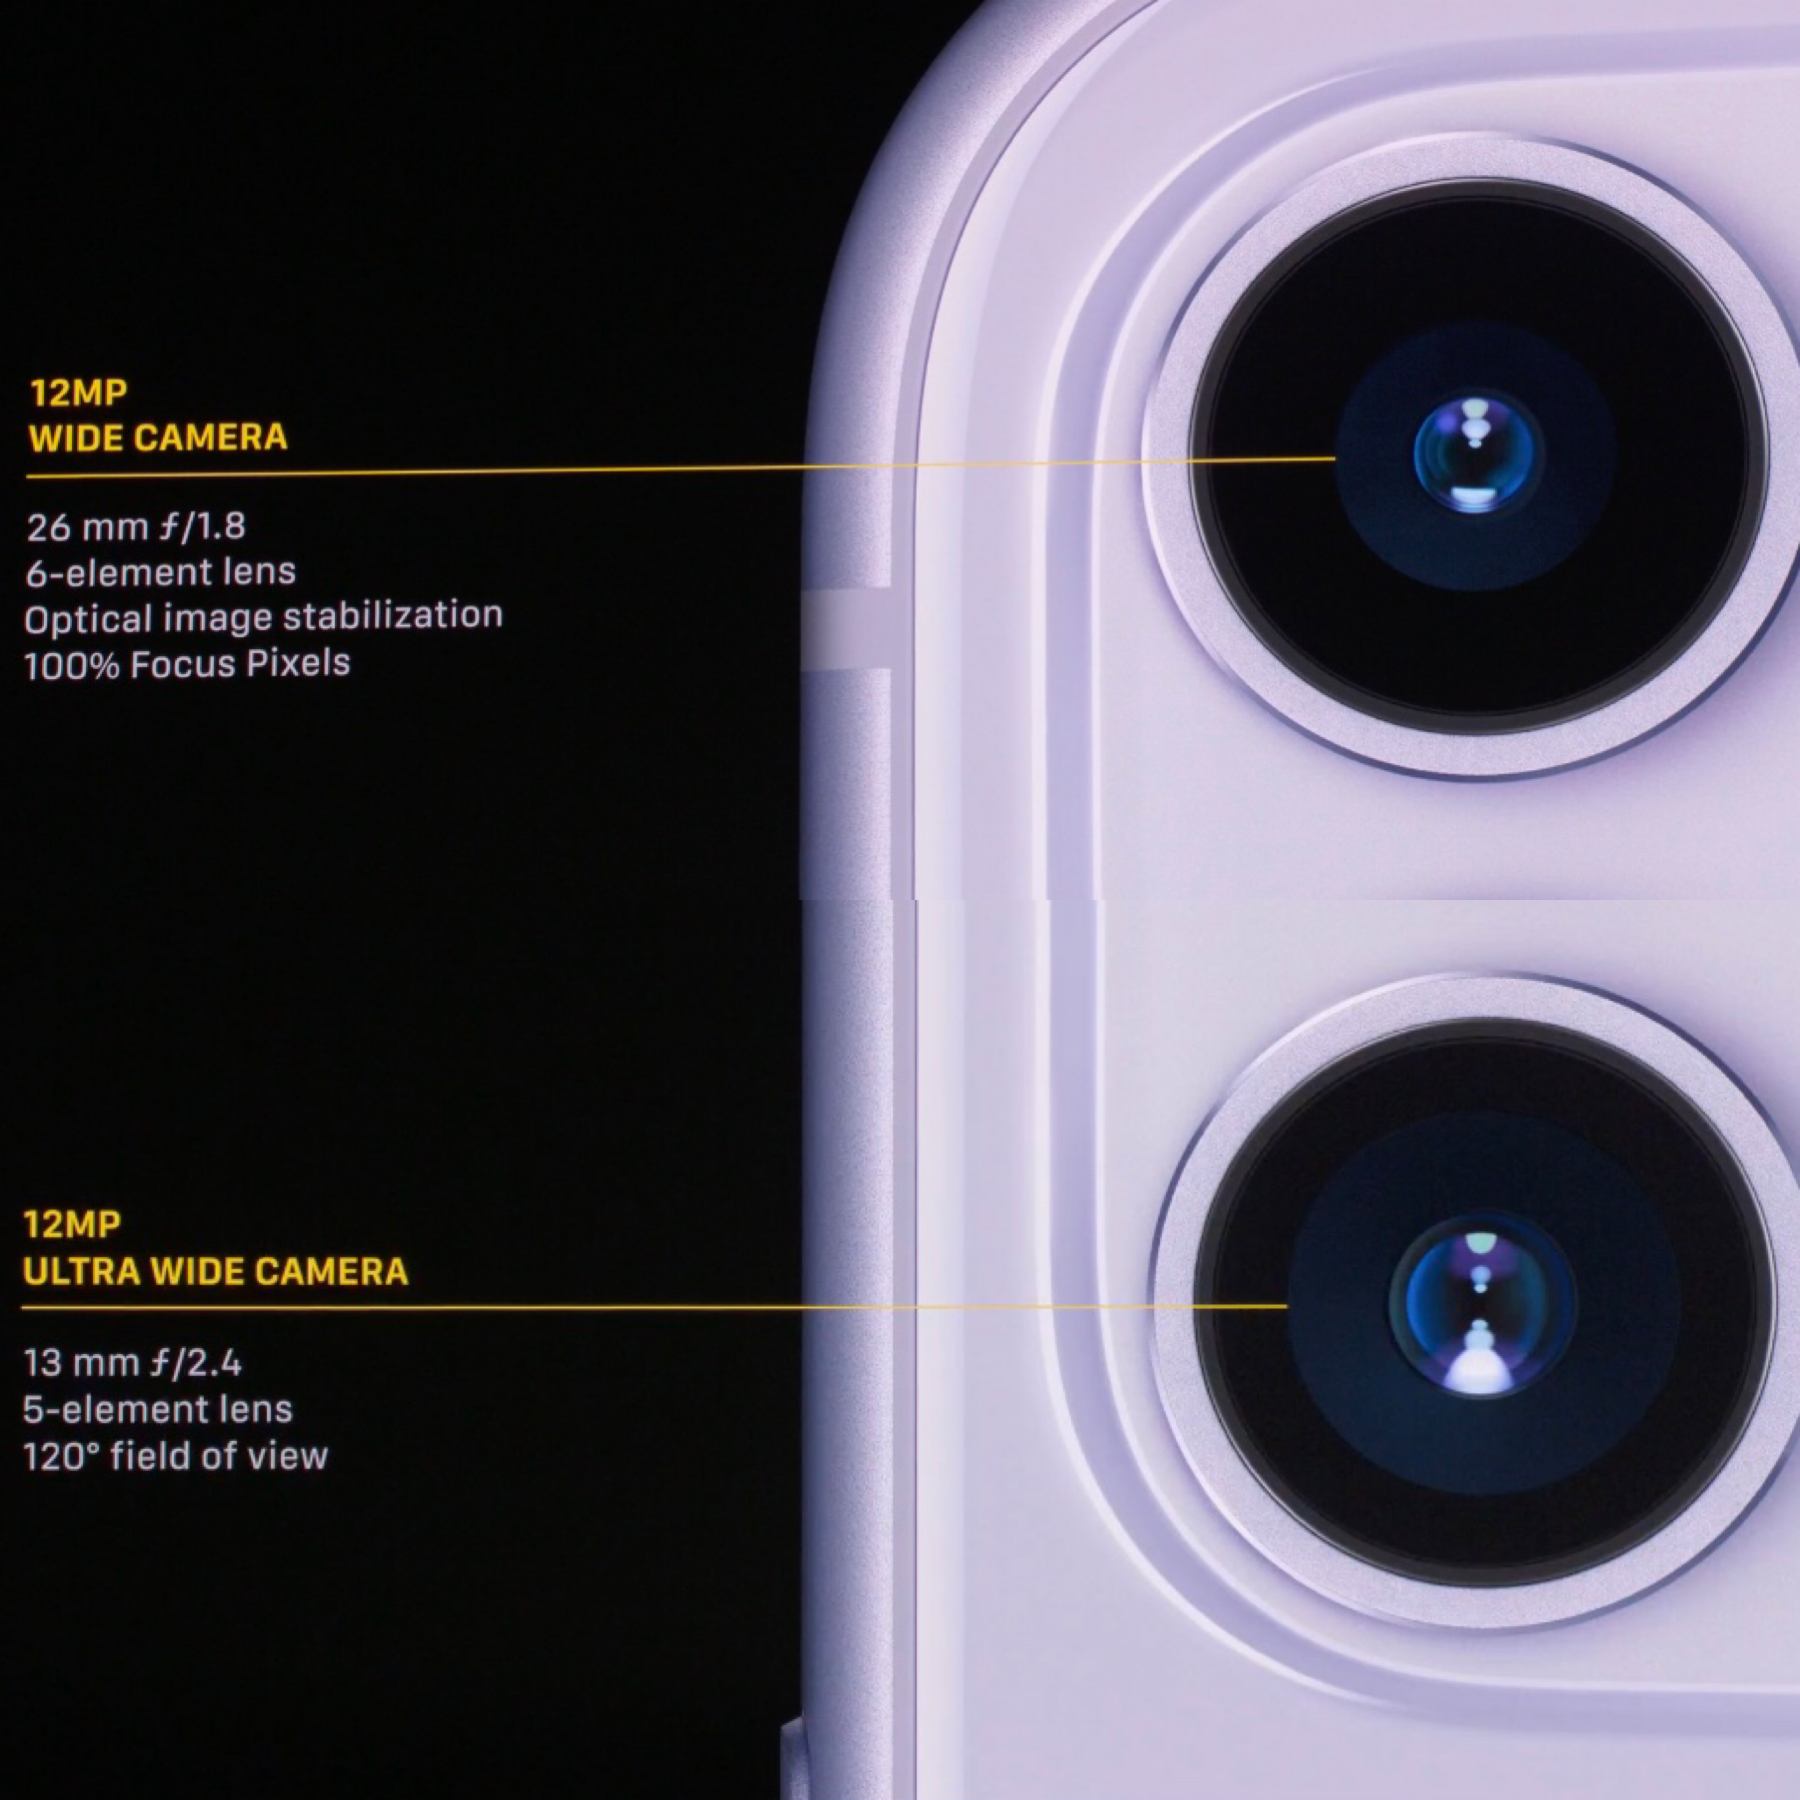 El anuncio de la cámara del iPhone 11 Pro fue de lo más relevante del Apple Event, pero ¿cuáles son las características y beneficios de ésta?